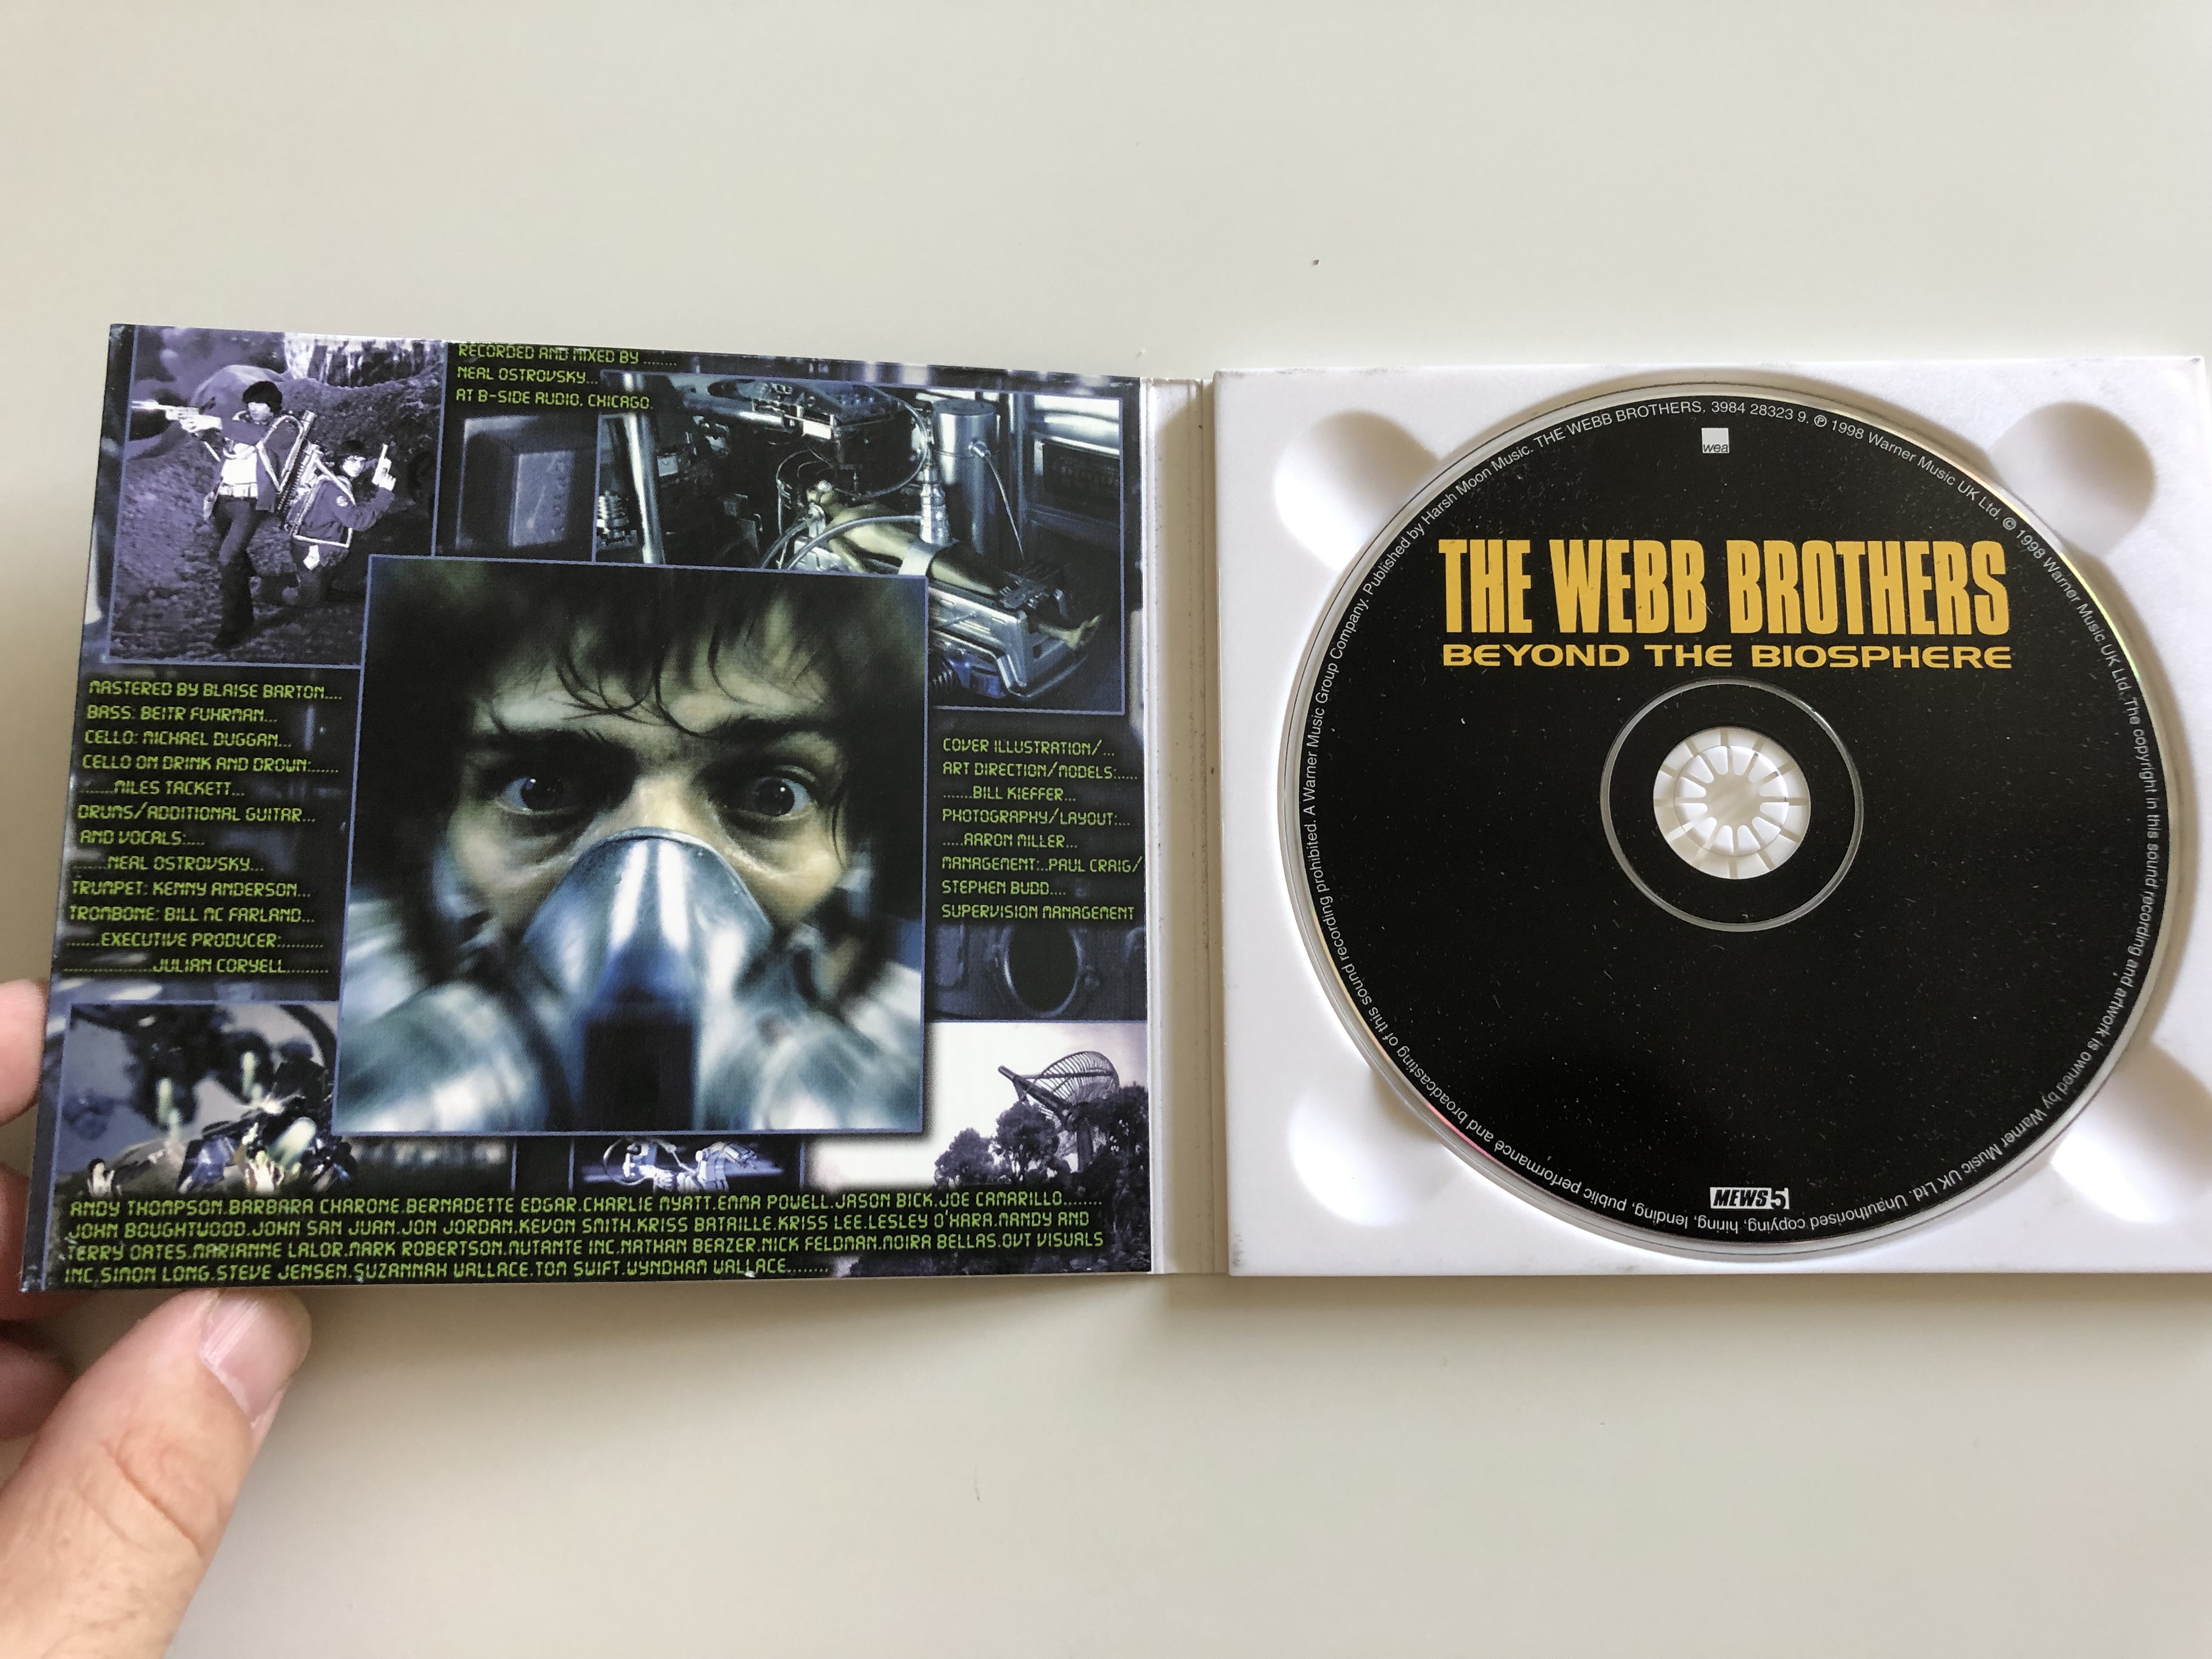 the-webb-brothers-beyond-the-biosphere-audio-cd-1998-mews-5-3984-28323-9-2-.jpg